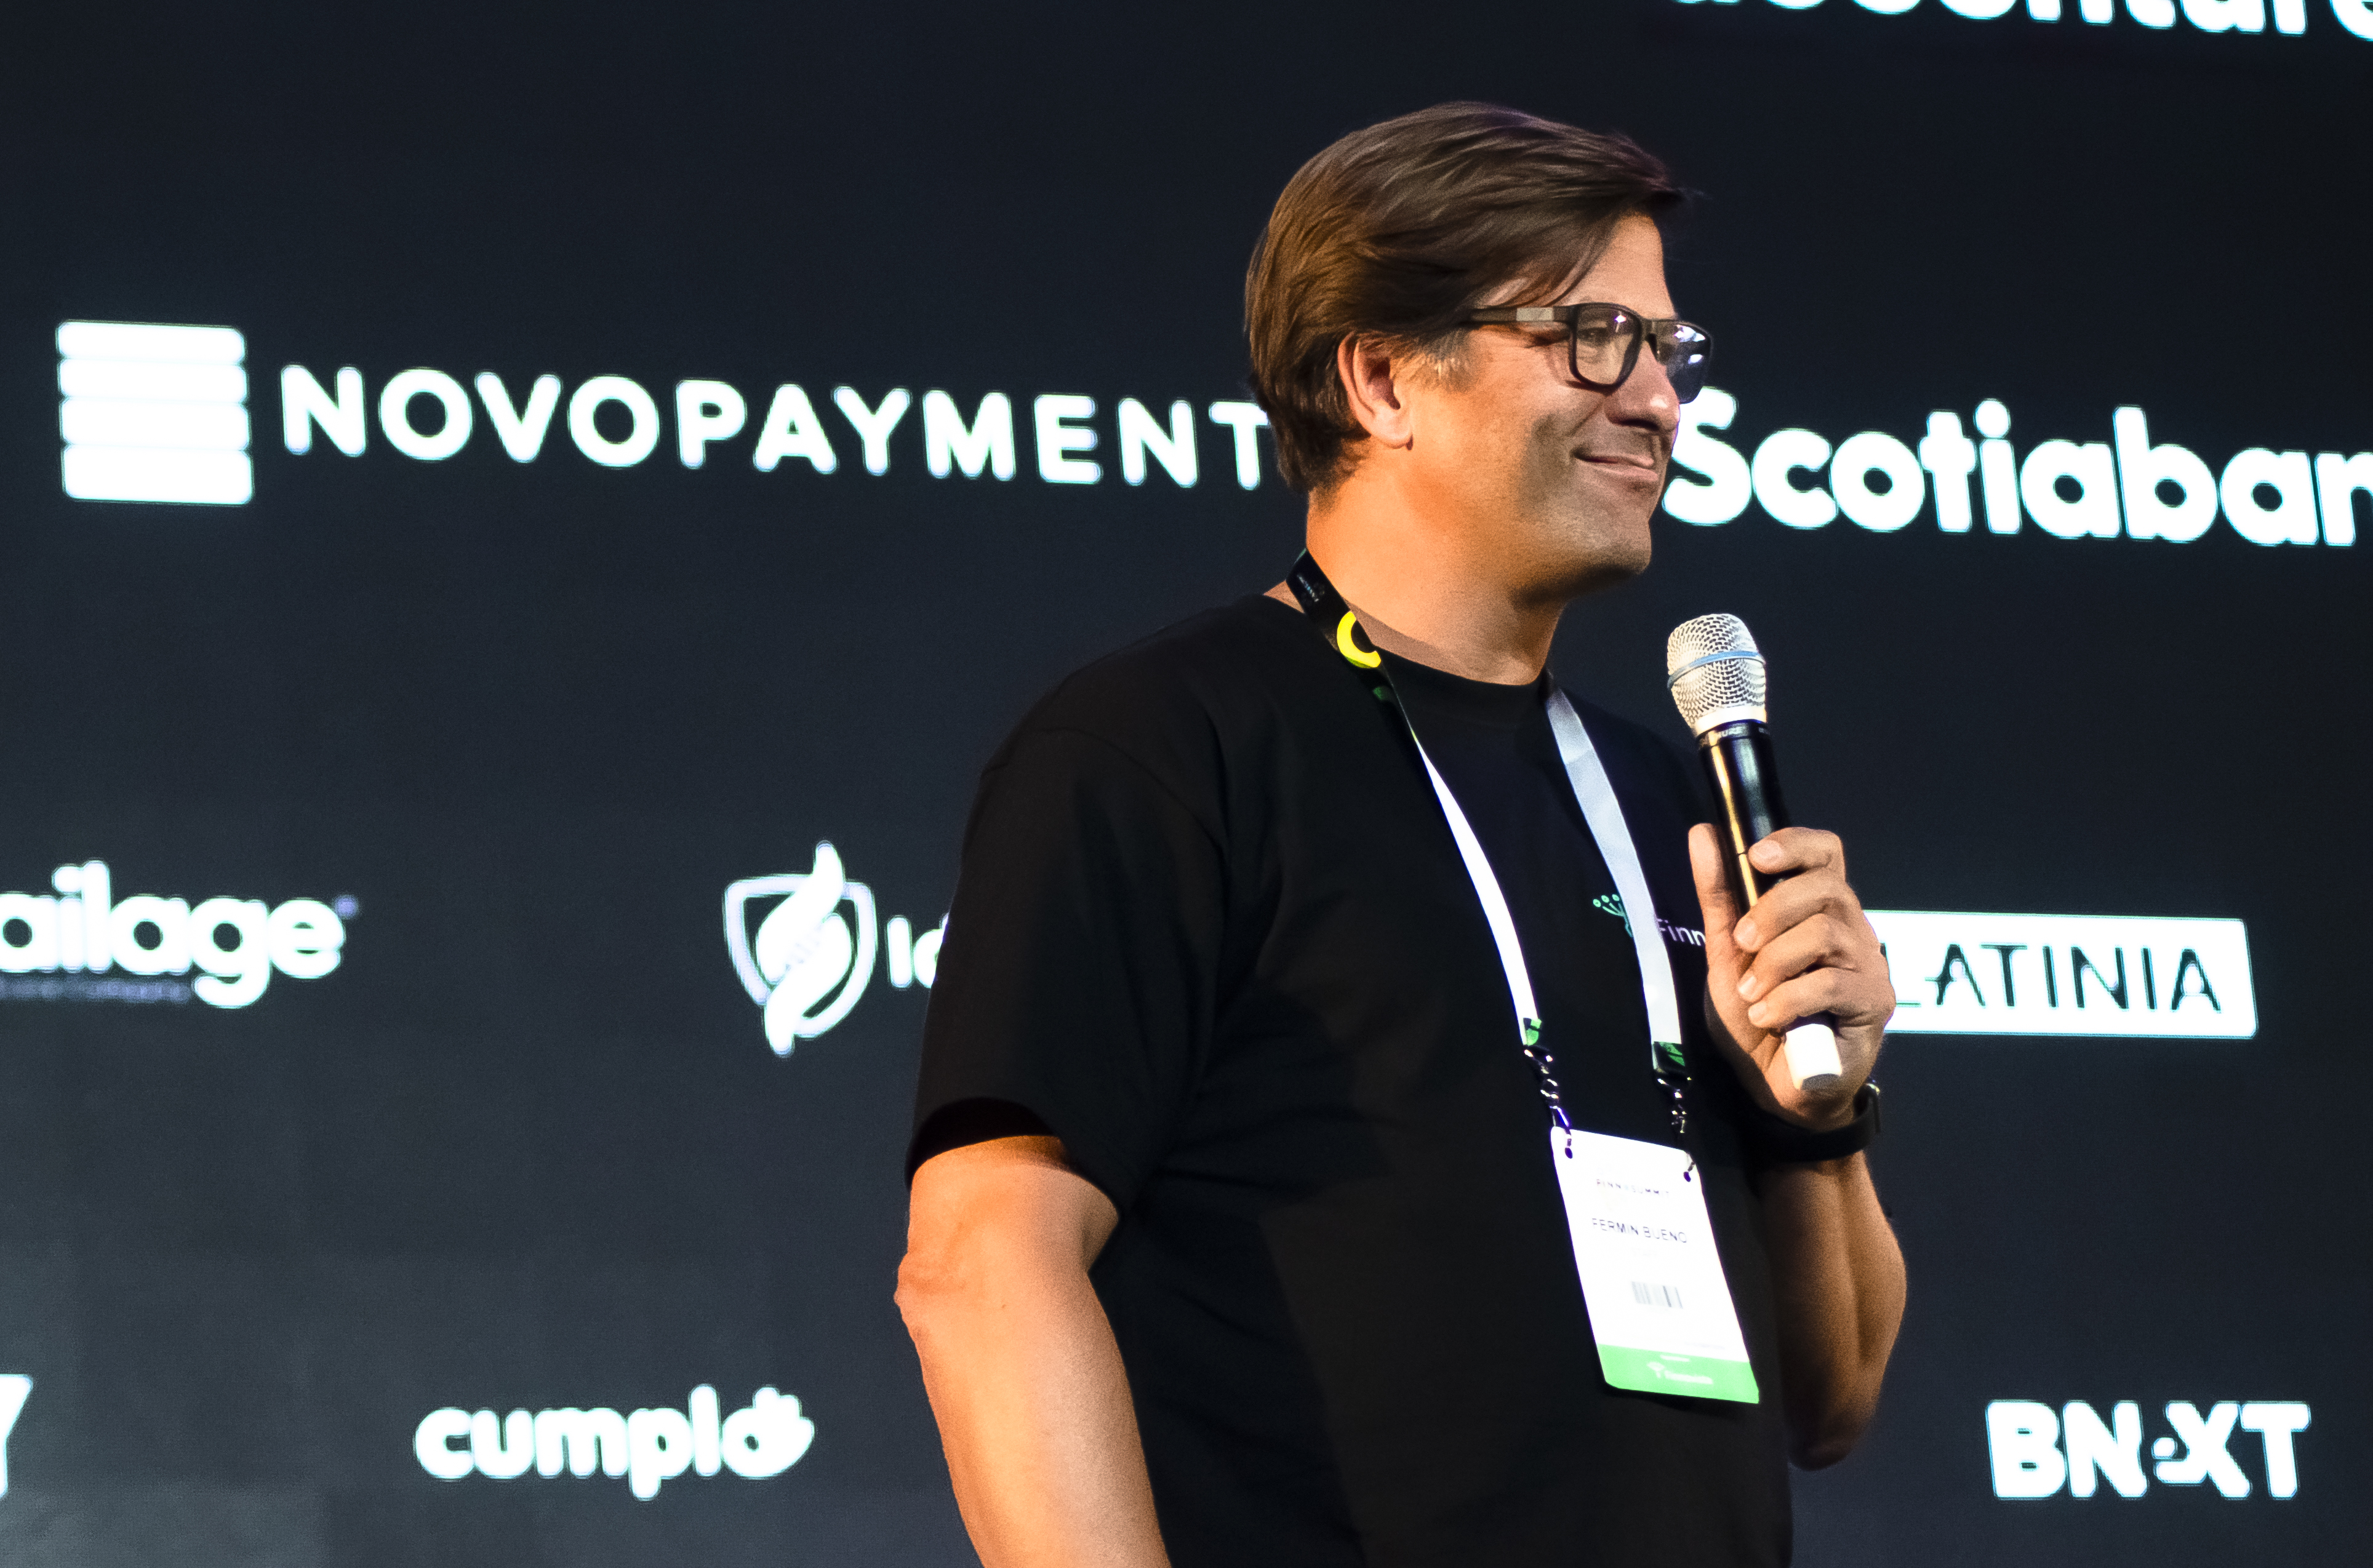 Fermín Bueno, Co-Founder & Managing Partner of Finnovista